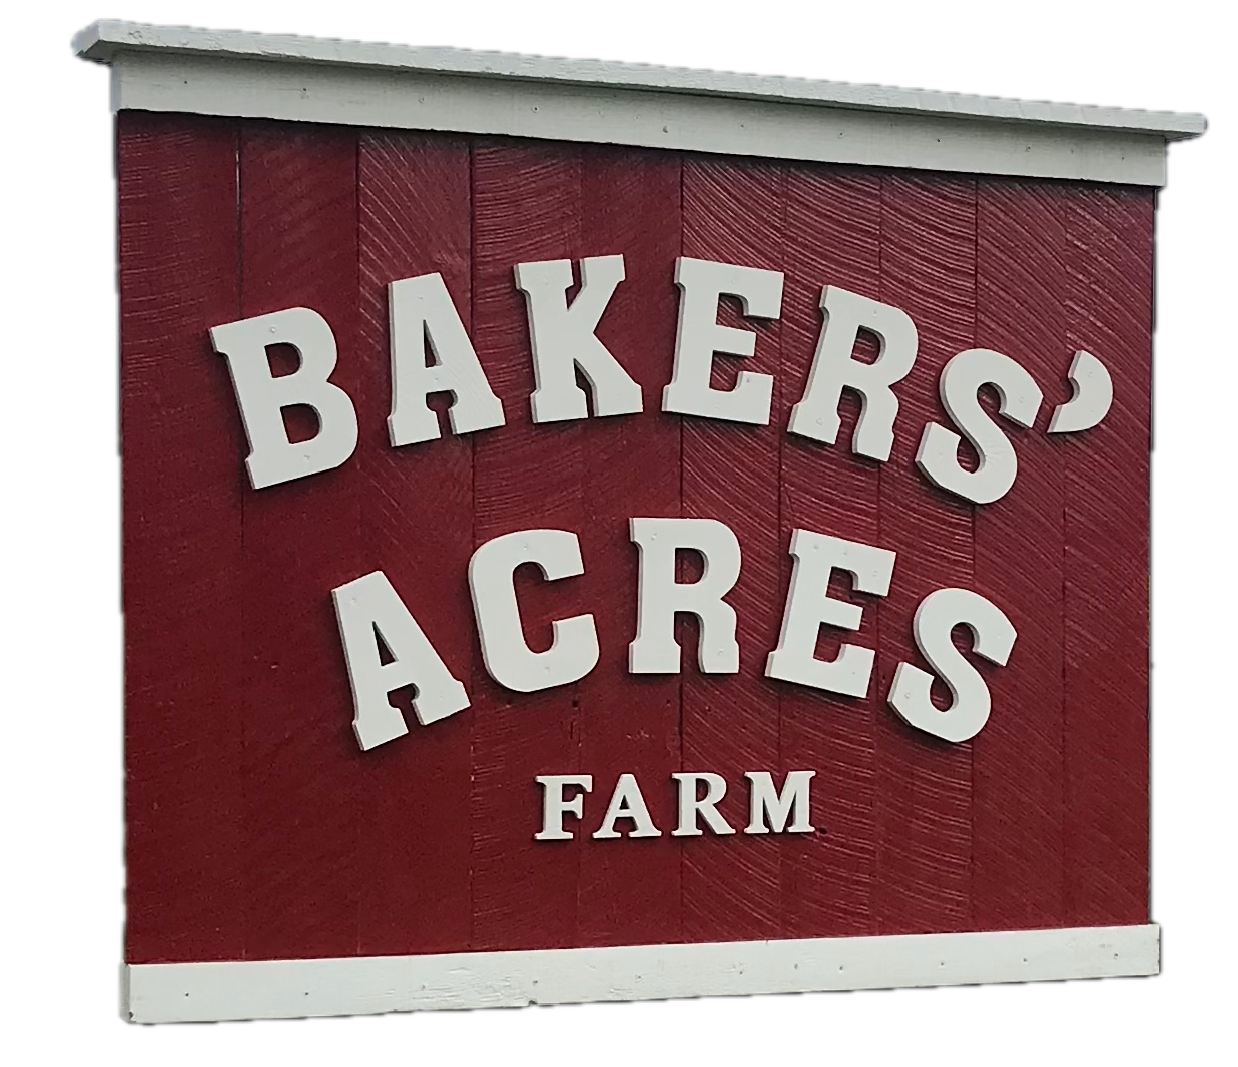 Bakers' Acres Farm